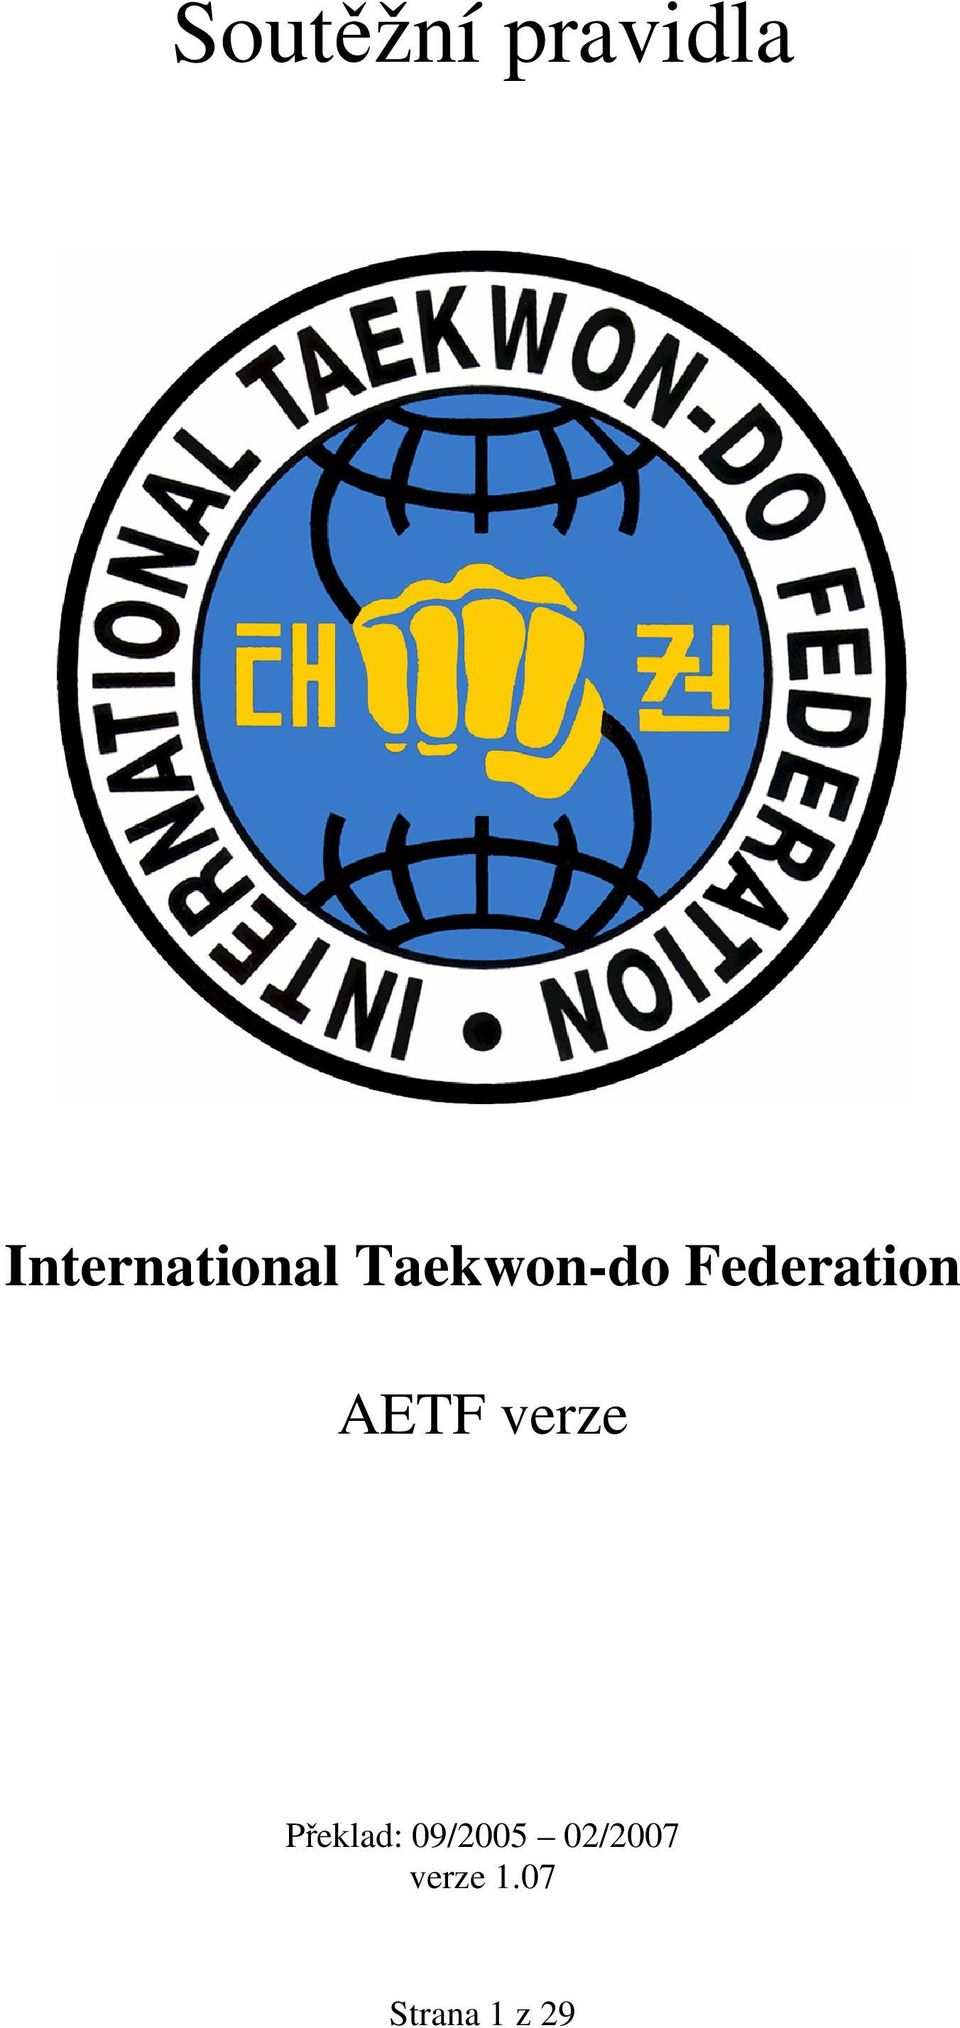 Federation AETF verze